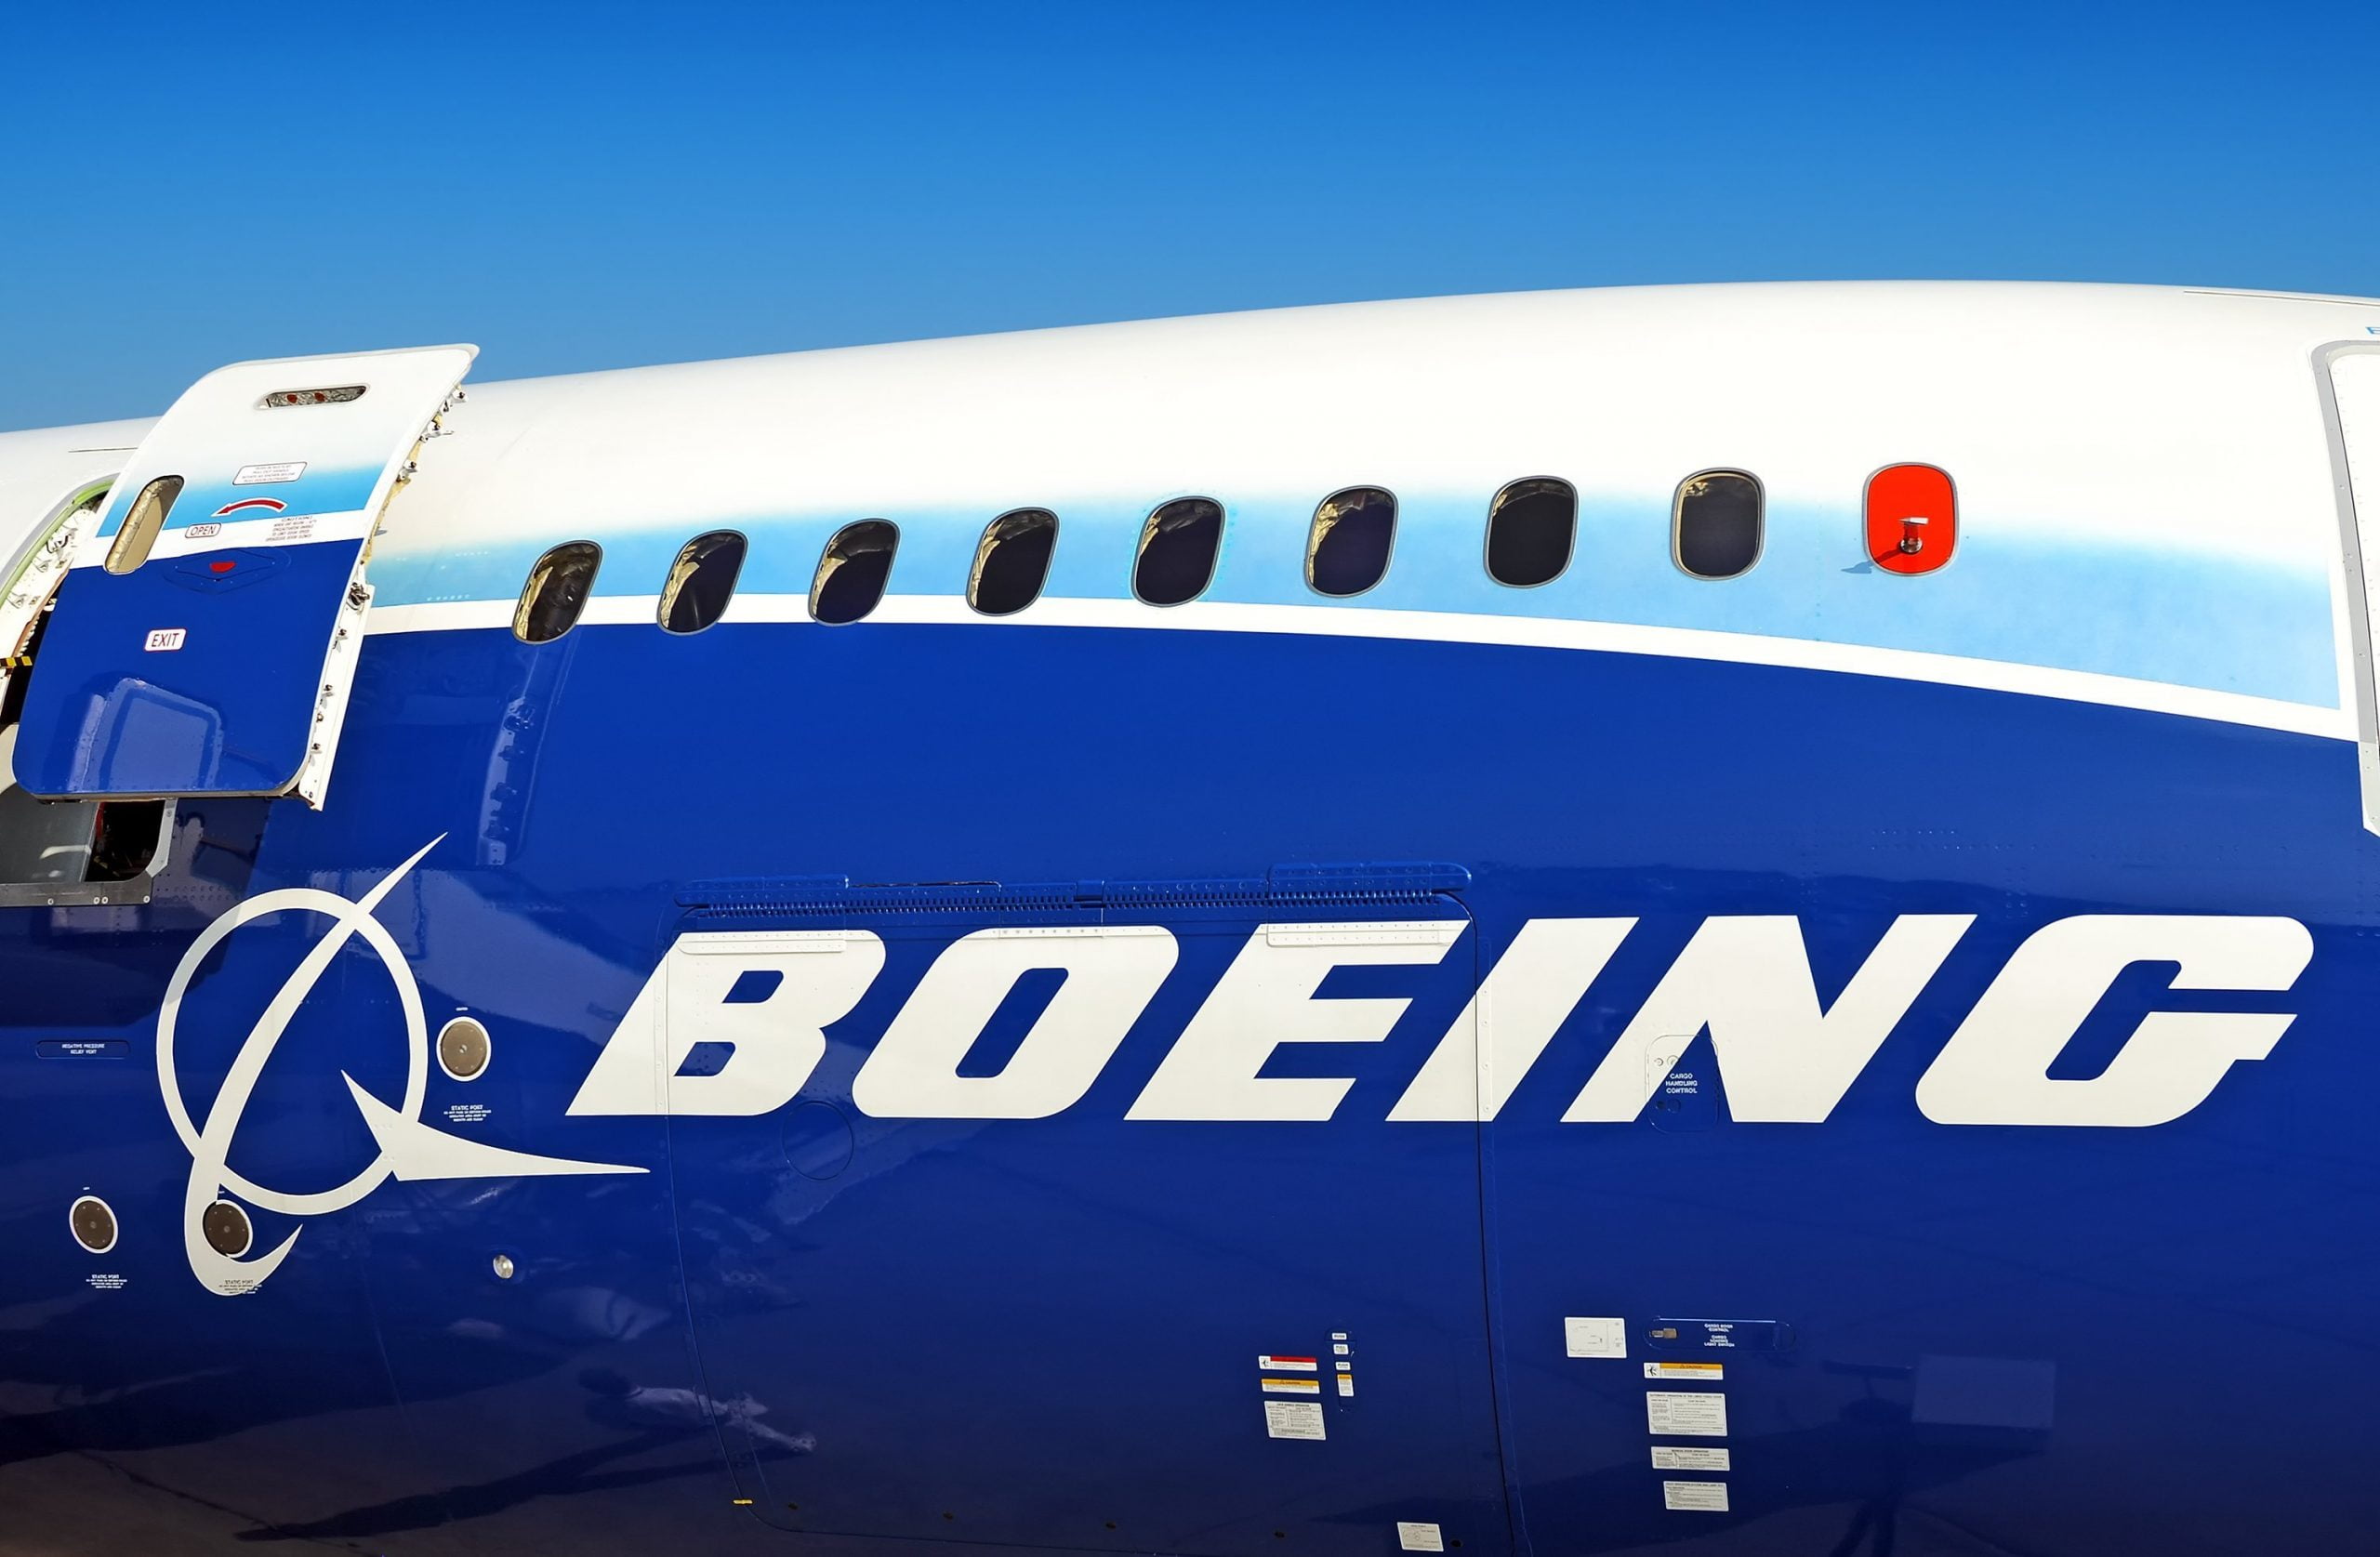 Crise de Corona causa demissão em massa na Boeing